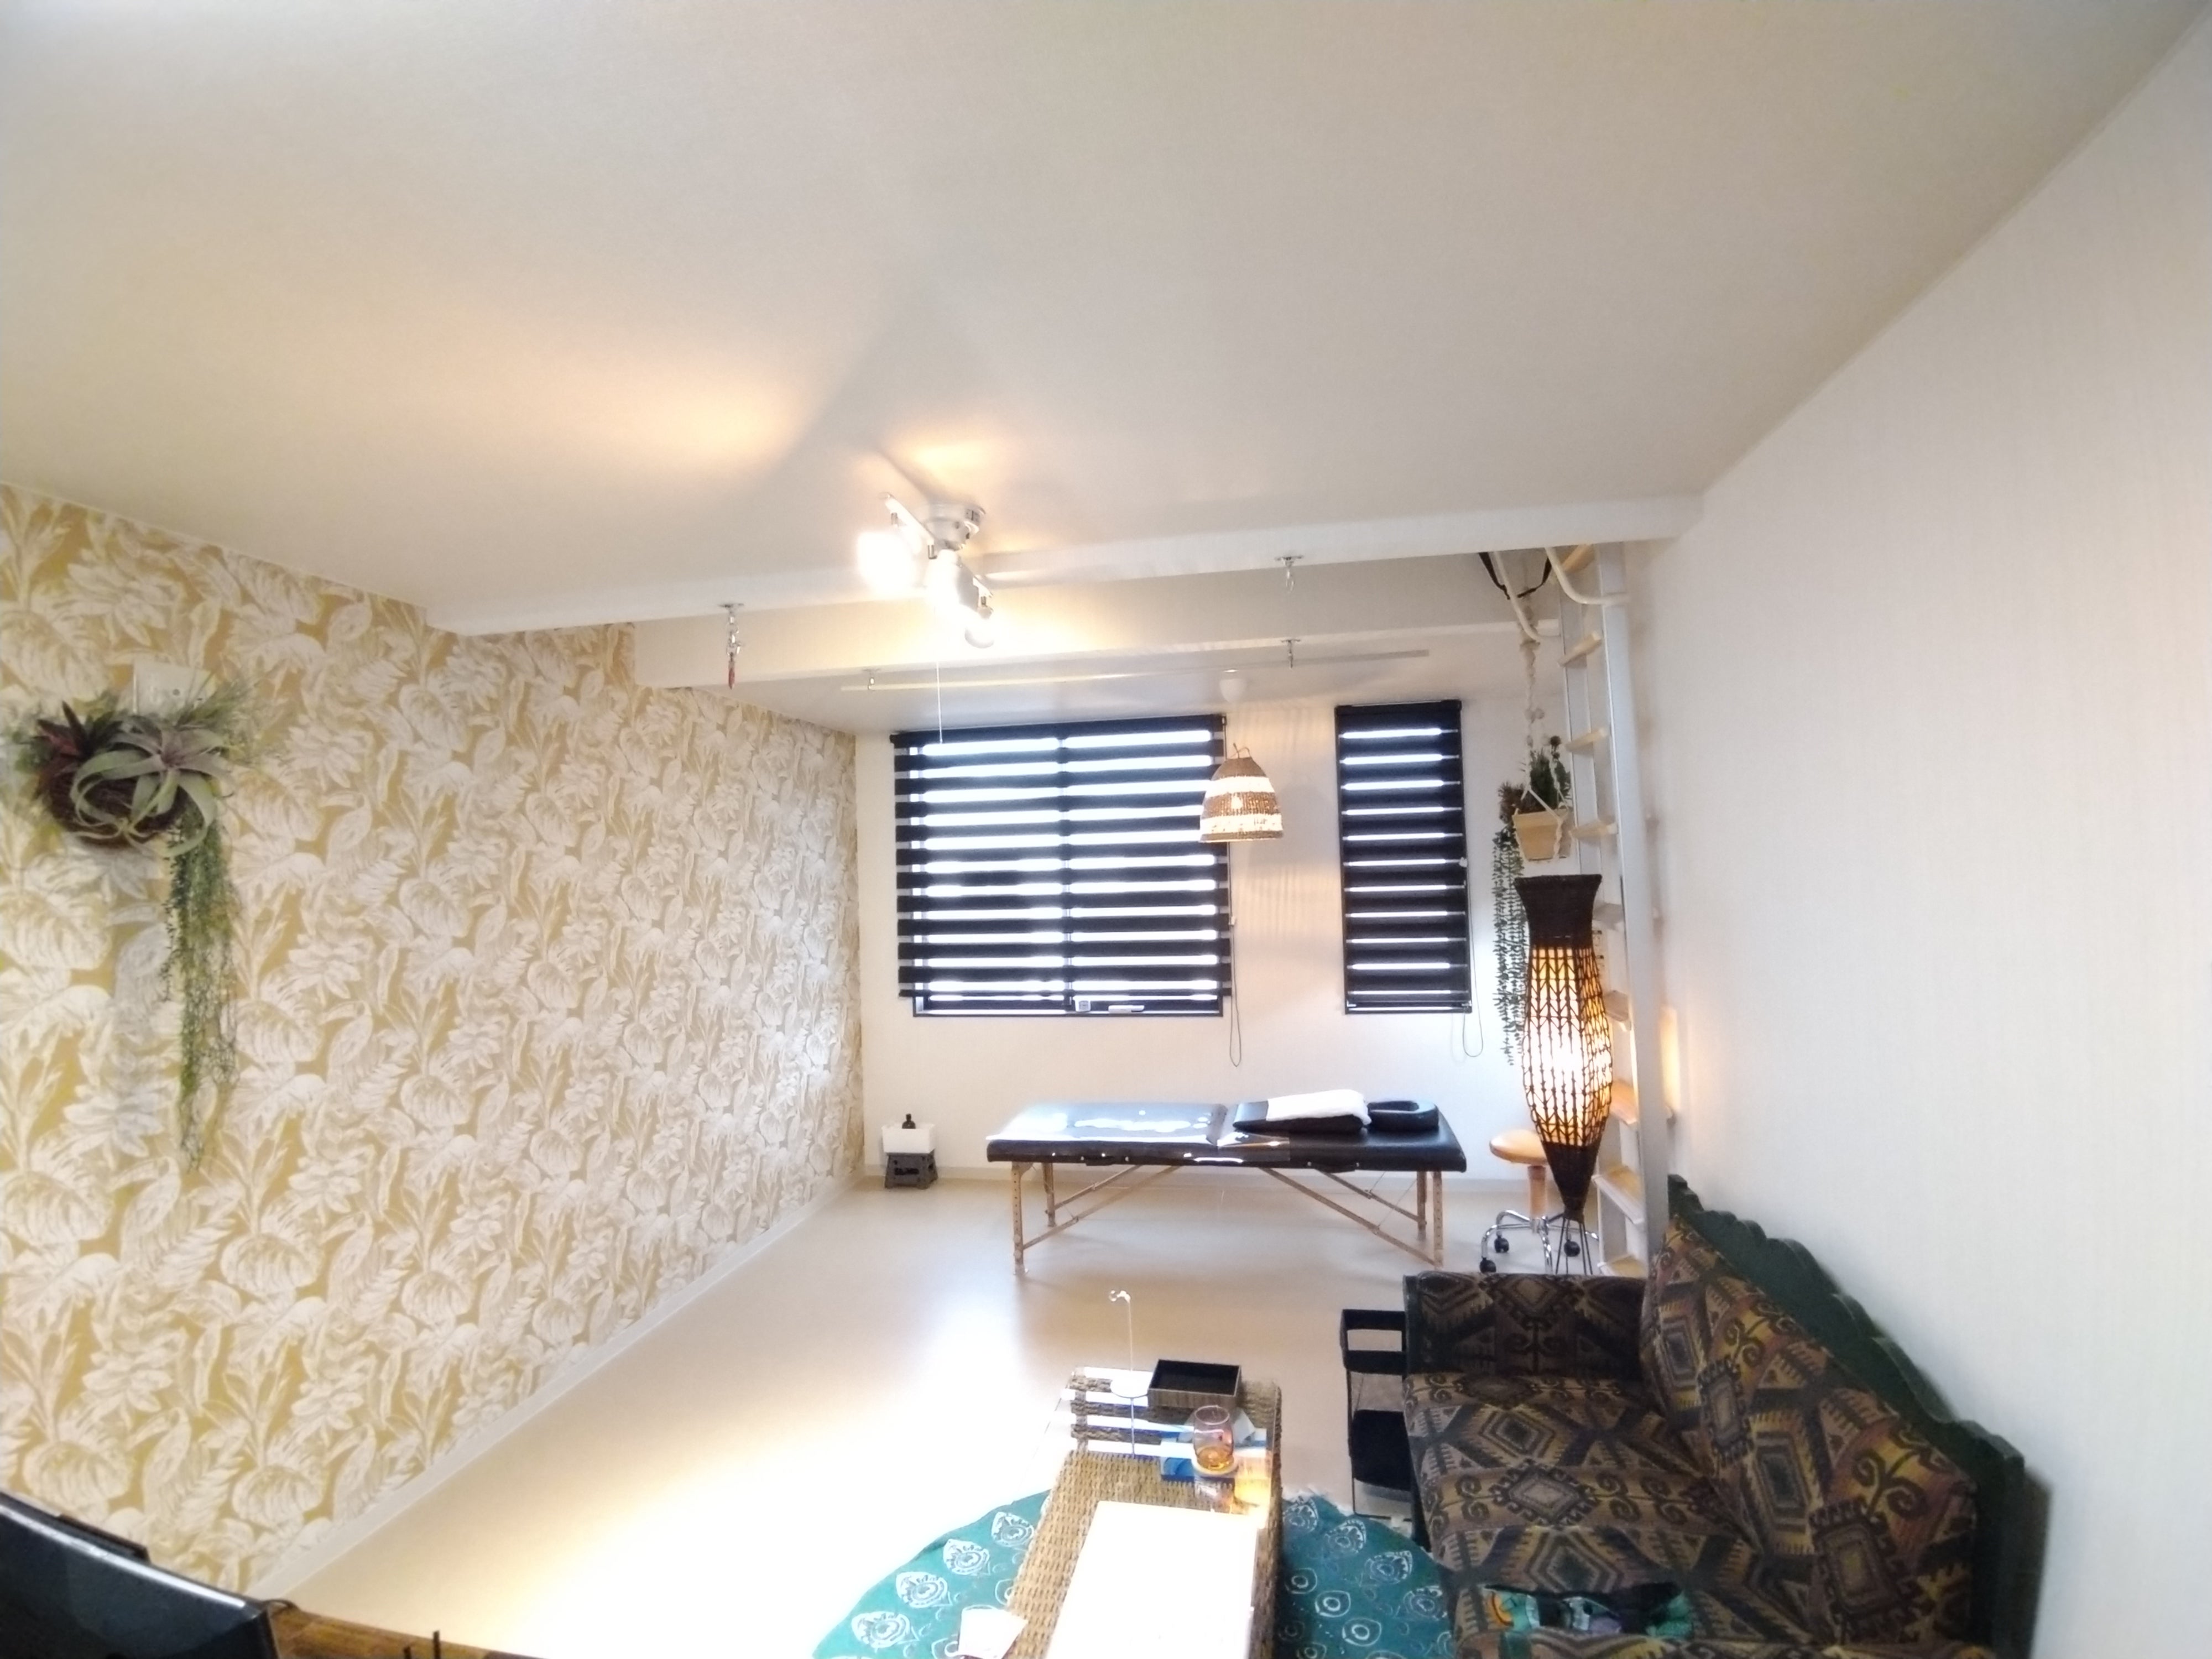 やはばカイロ整体　Room322の雰囲気の写真 - アジアン風なお部屋も素敵です✨